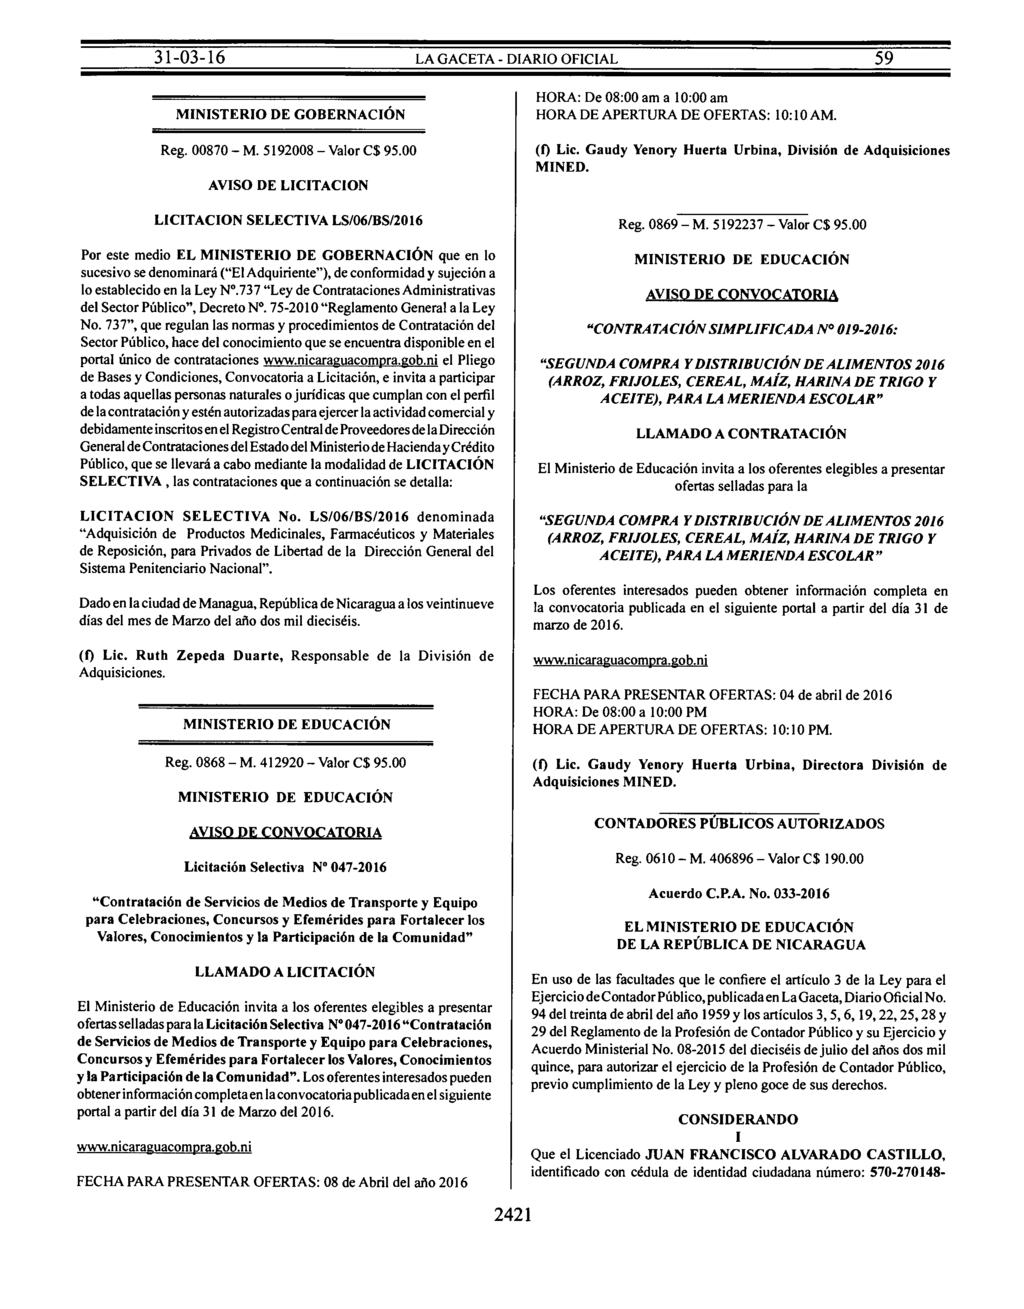 MINISTERIO DE GOBERNACIÓN Reg. 00870- M. 5192008 -Valor C$ 95.